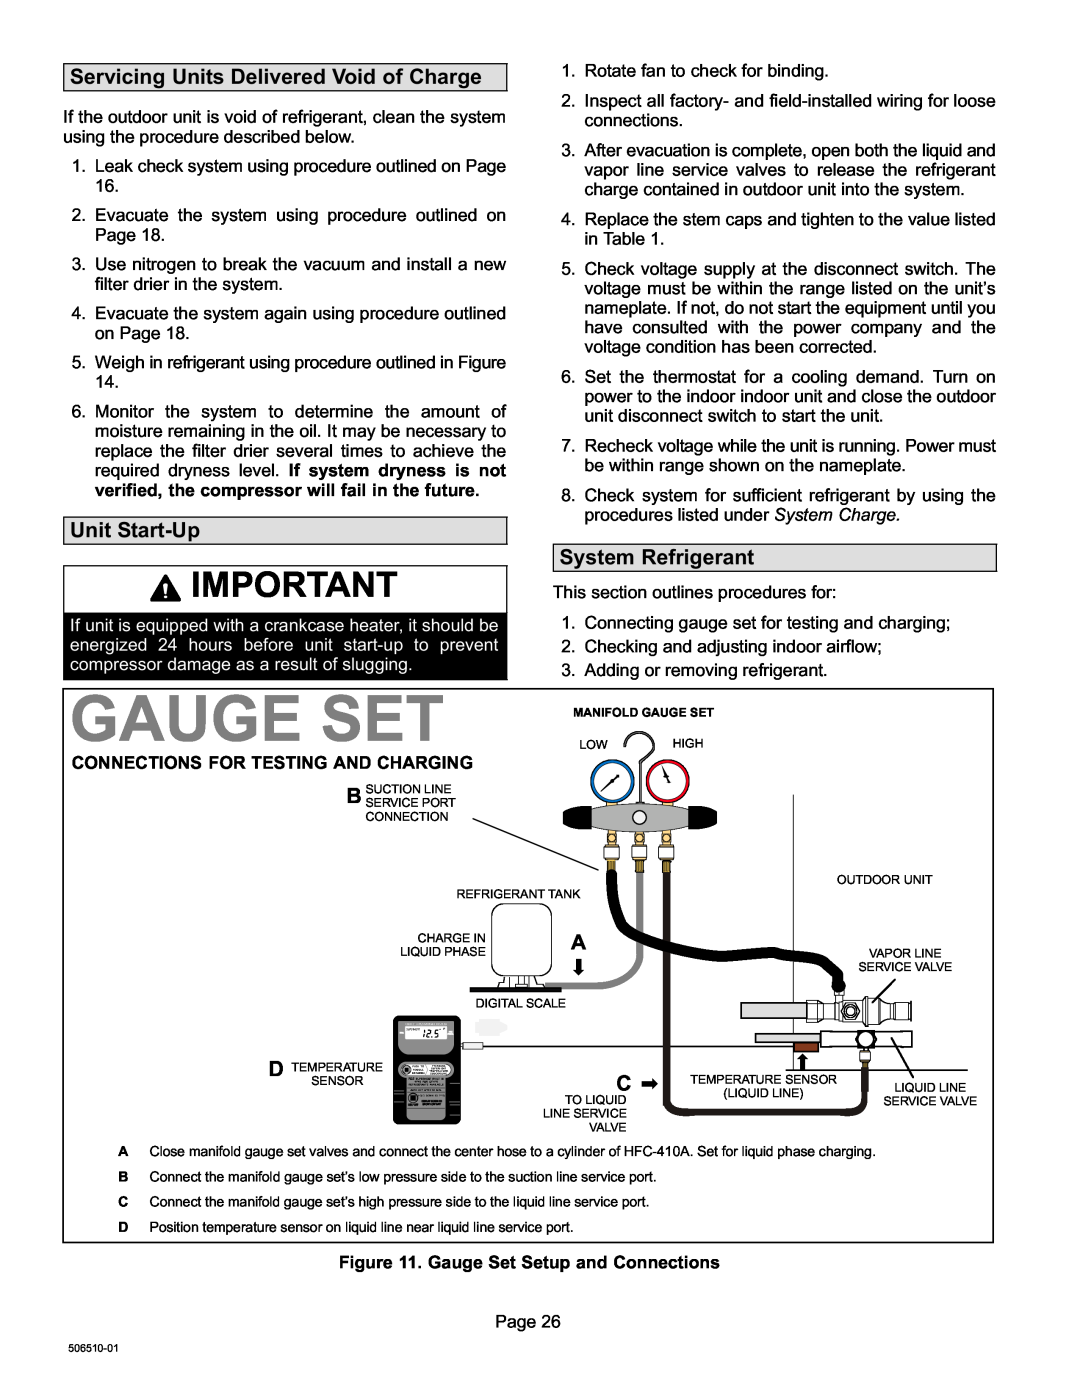 Lennox International Inc 506510-01 Gauge Set, Servicing Units Delivered Void of Charge, Unit Start−Up, System Refrigerant 